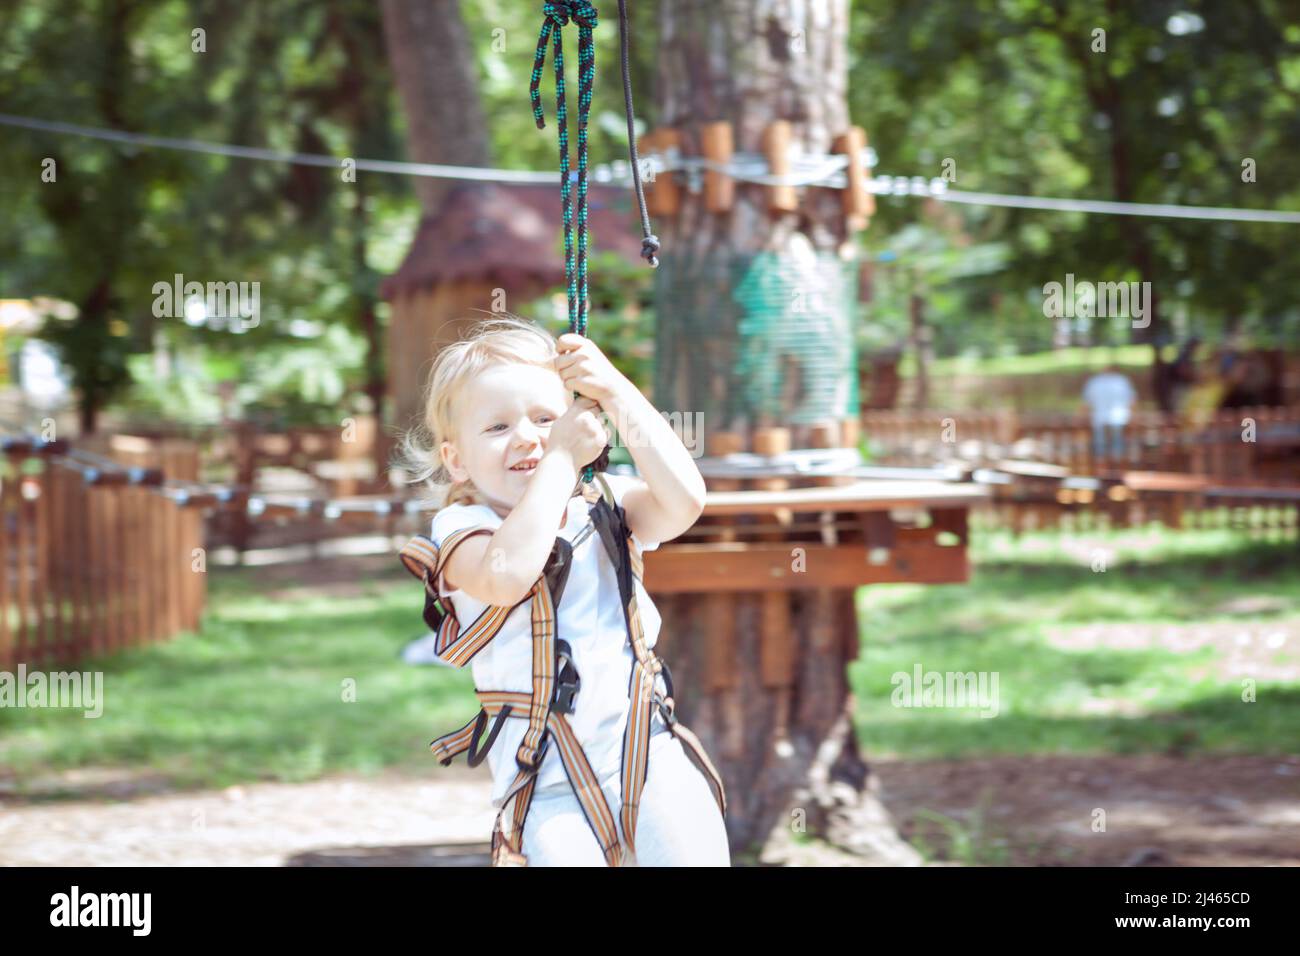 Activité de loisirs. Petite fille sur une carabine traverse la corde dans un parc extrême. Banque D'Images